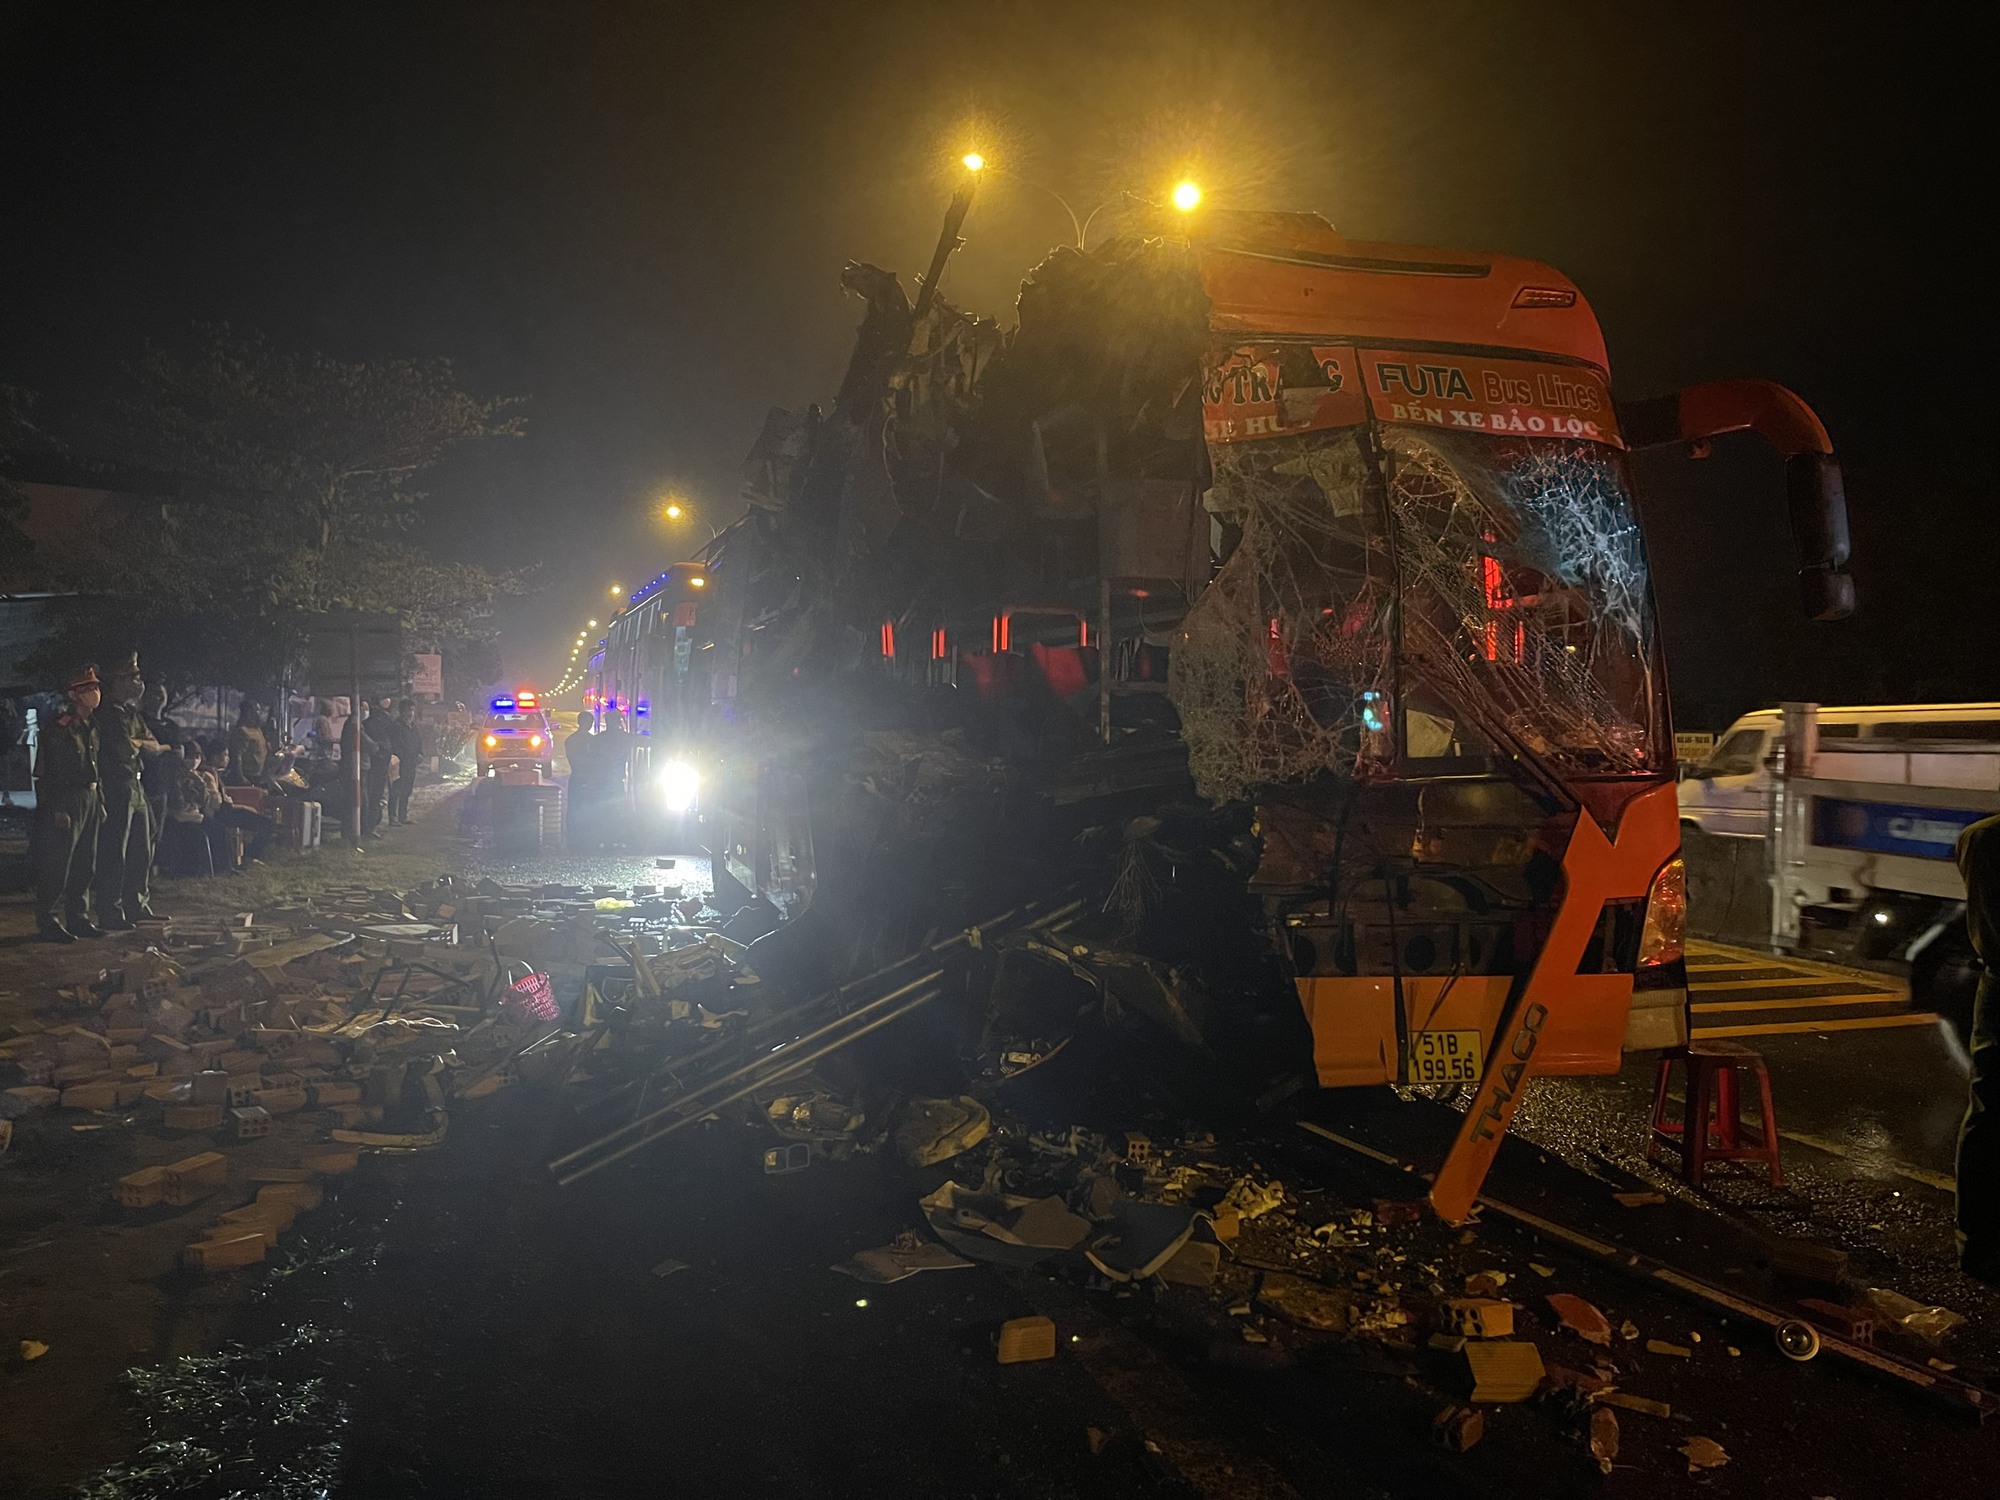 Thêm vụ tai nạn ở Quảng Nam làm 16 người thương vong, Ủy ban ATGT Quốc gia chỉ đạo khẩn - Ảnh 2.